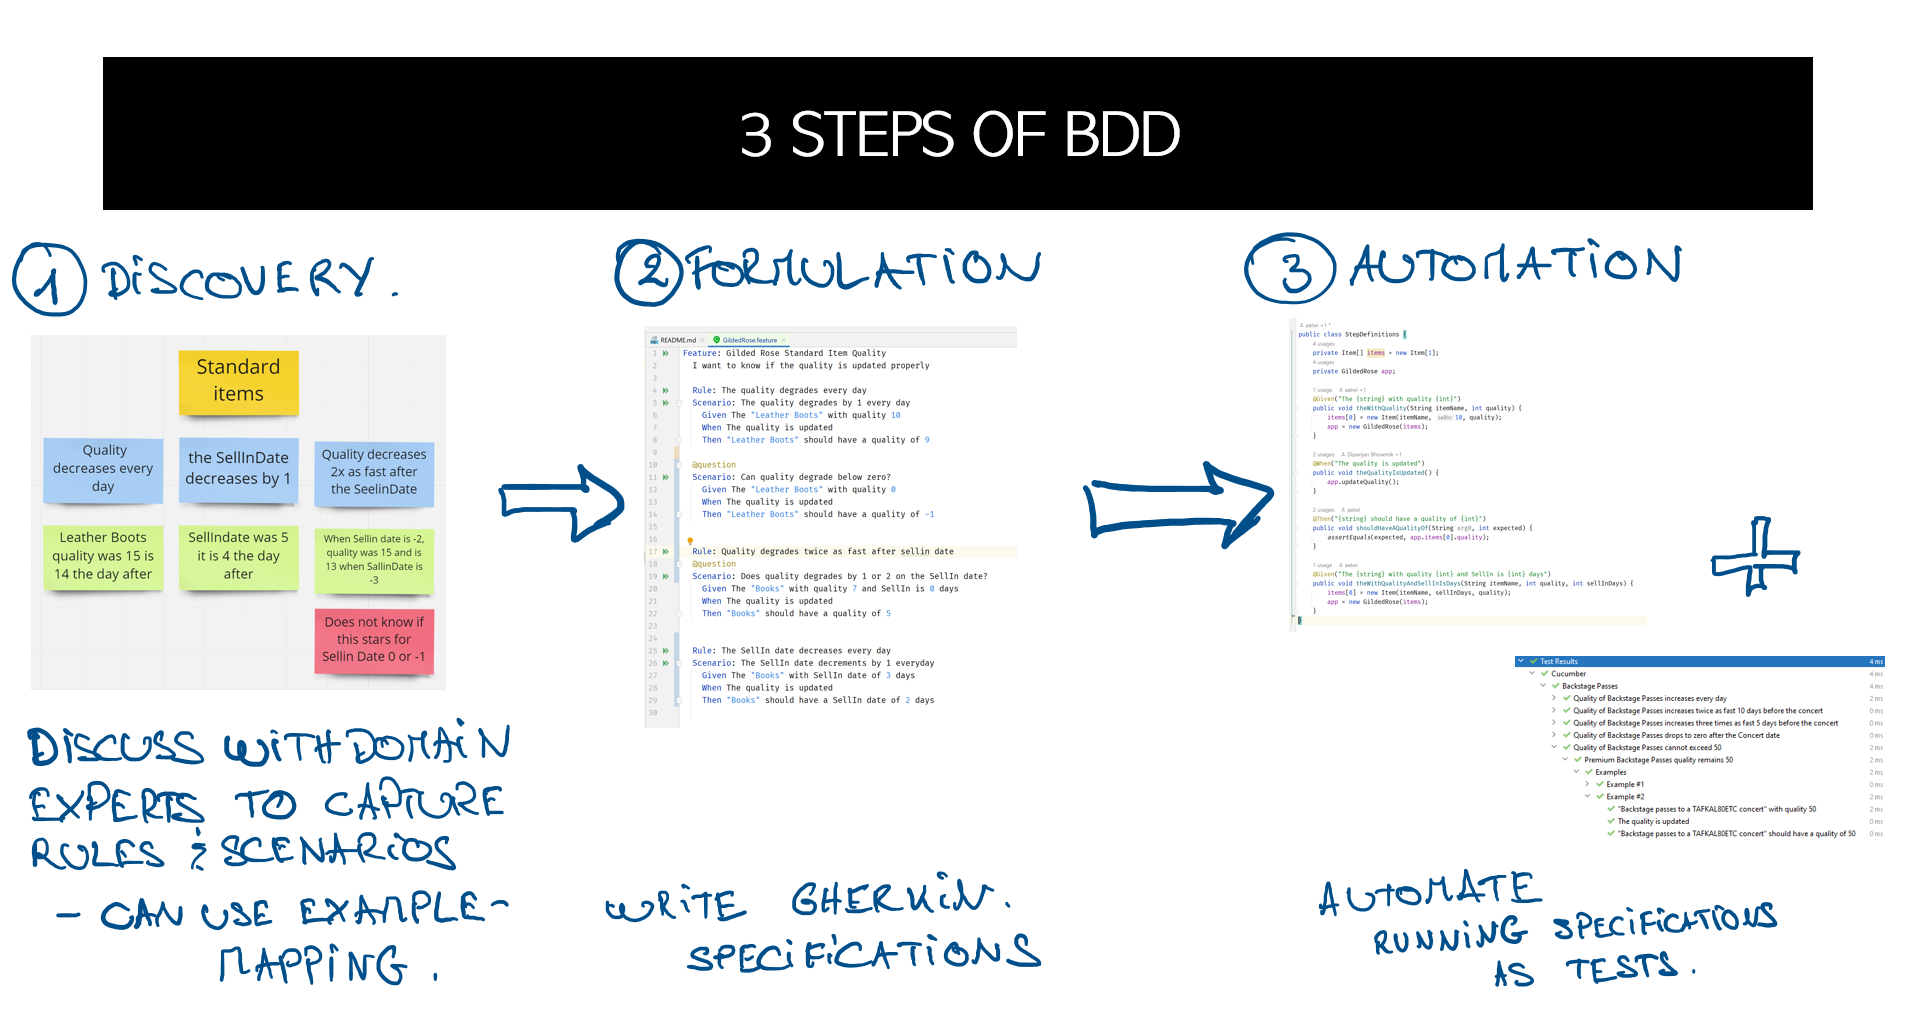 3 Steps of BDD